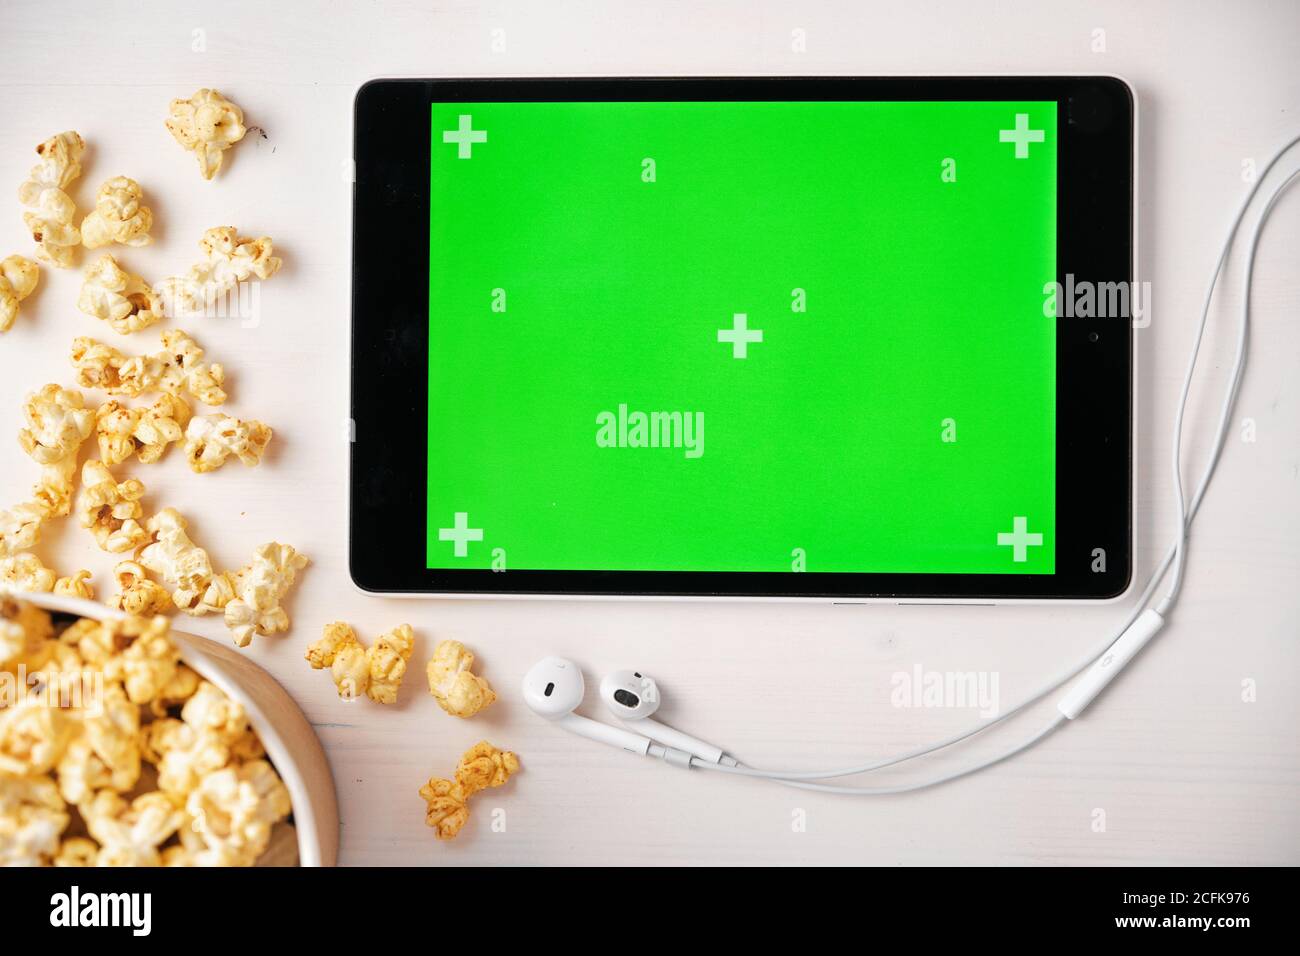 Tablet mit Chroma-Key, Popcorn-Box und Apple-Kopfhörer auf dem weißen Tisch. Platz für Werbung und Logo. Stockfoto